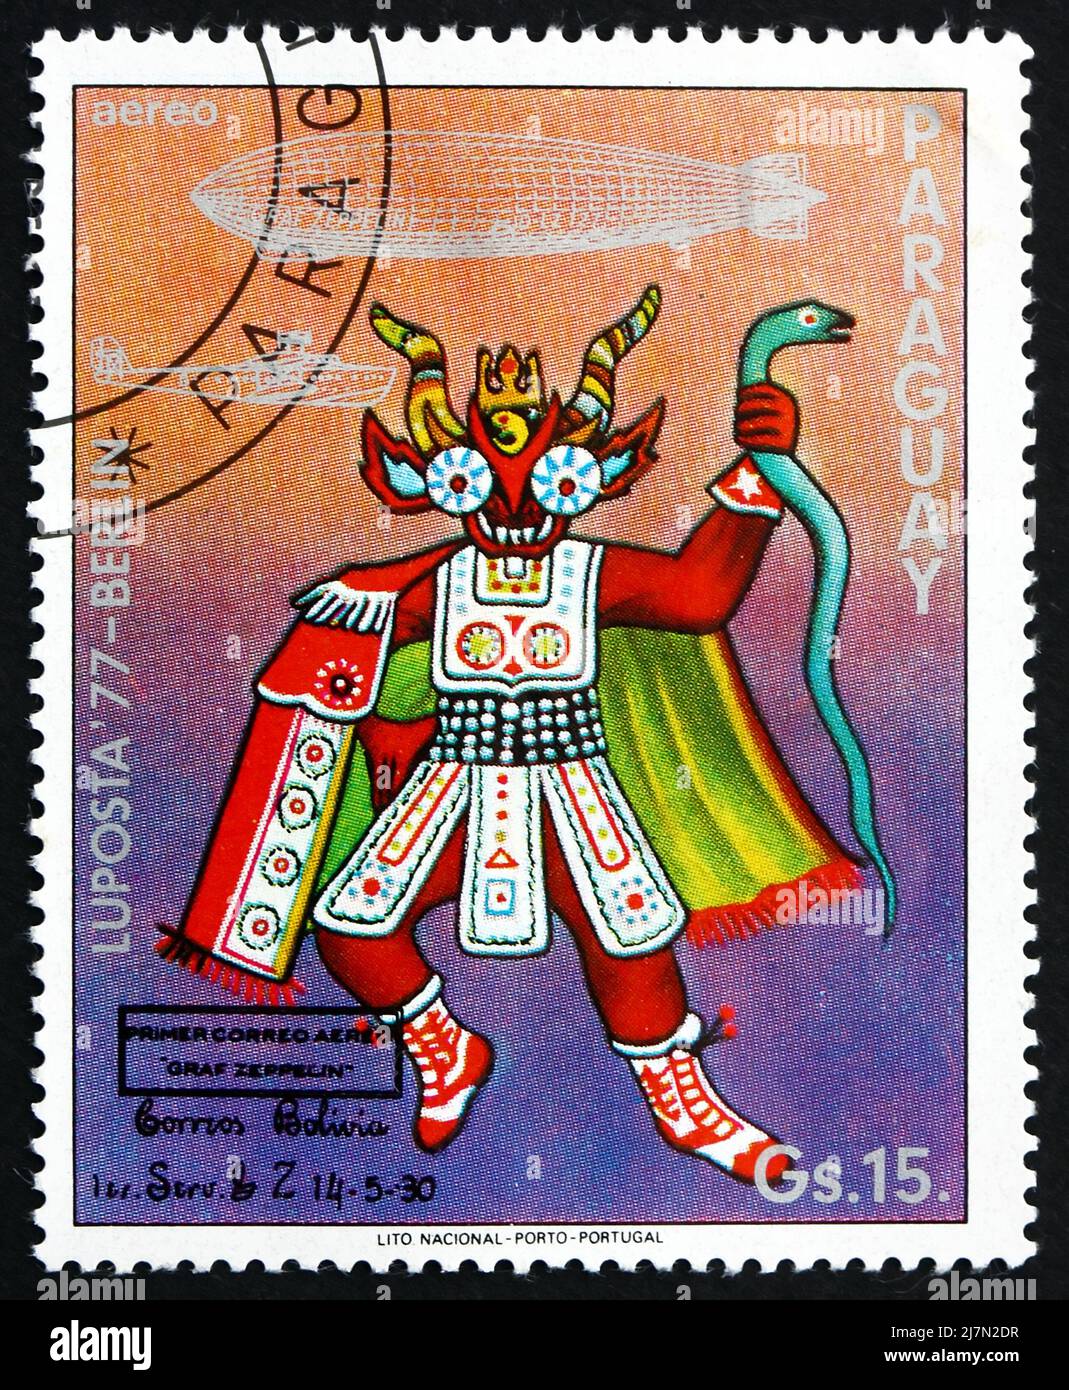 PARAGUAY - VERS 1977: Un timbre imprimé au Paraguay montre le Costume indien de cérémonie, Bolivie, vol de Graf Zeppelin 1st en Amérique du Sud, vers 1977 Banque D'Images